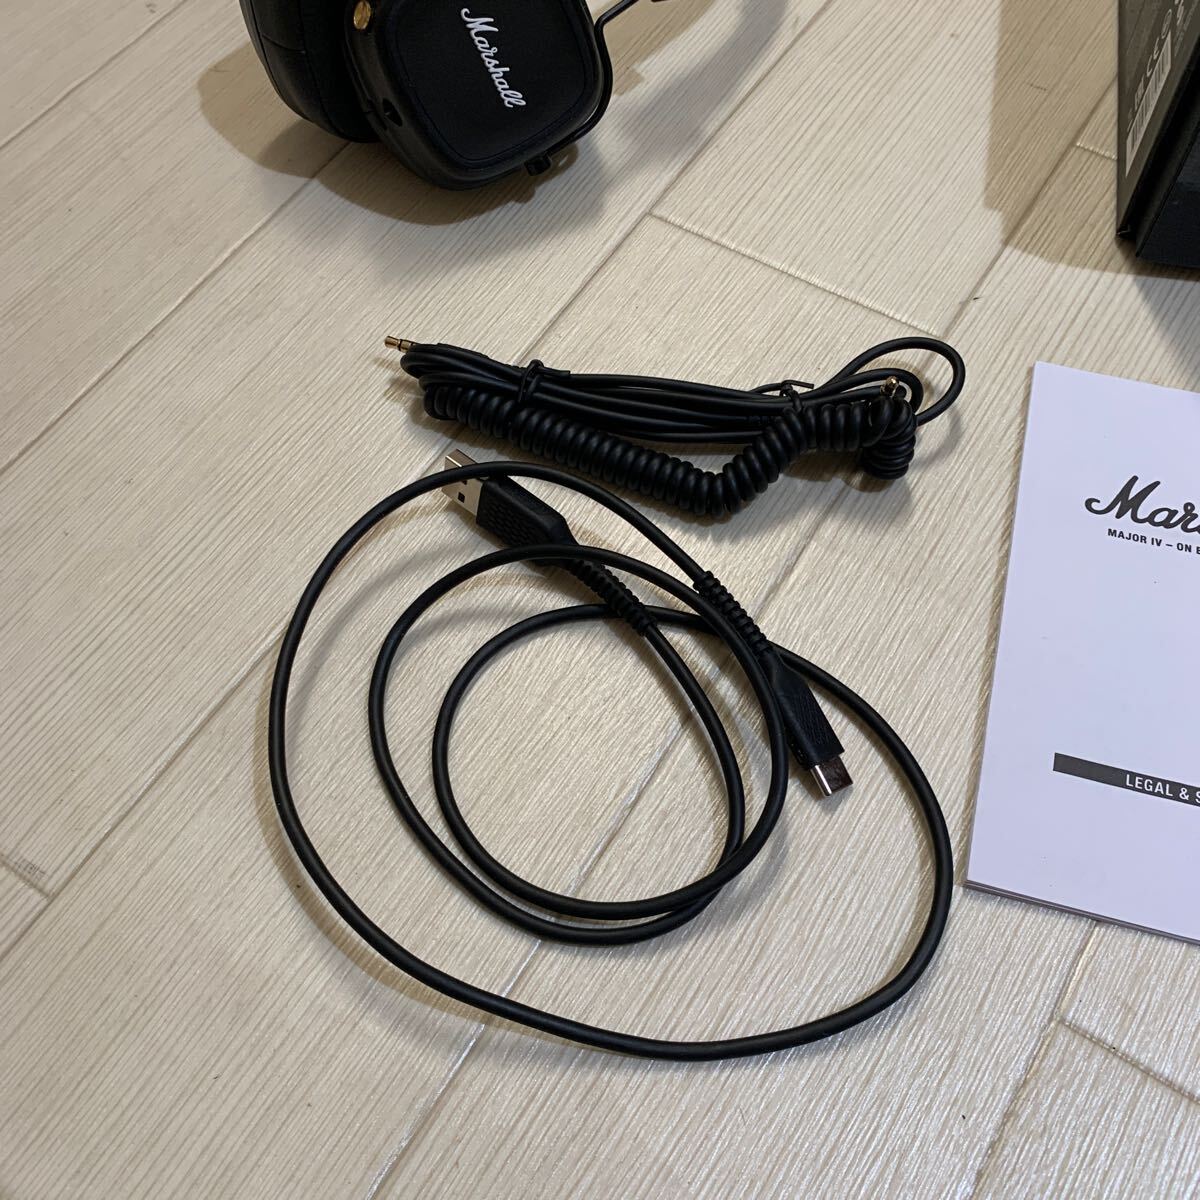 Marshall Marshall MAJOR IV беспроводной наушники черный Bluetooth соответствует кабель инструкция коробка * электризация не проверка 